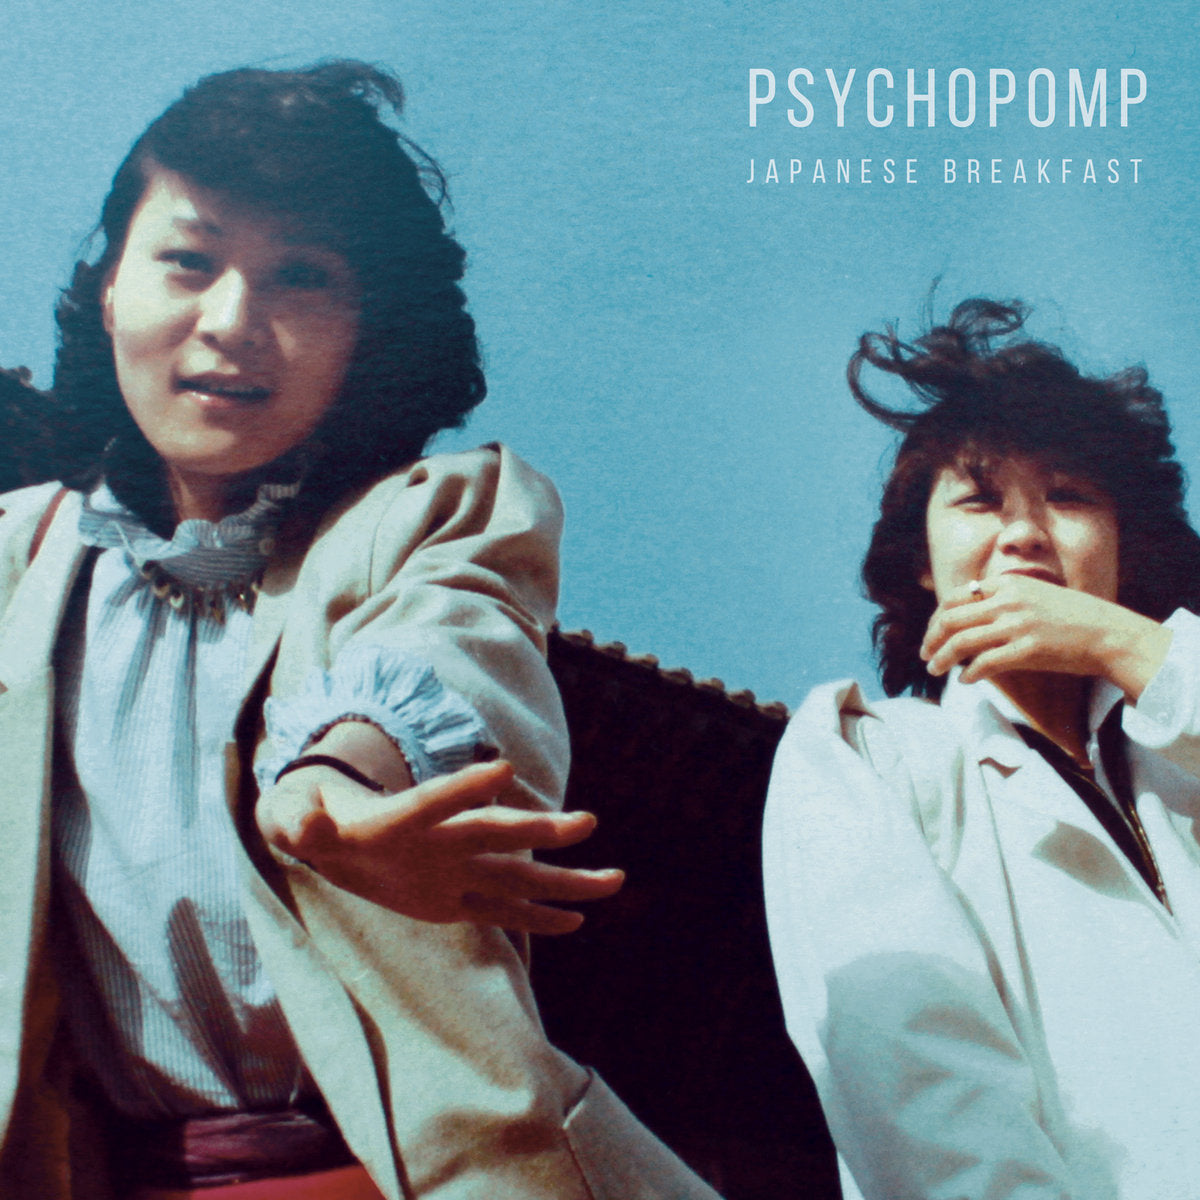 日式早餐“Psychopomp”